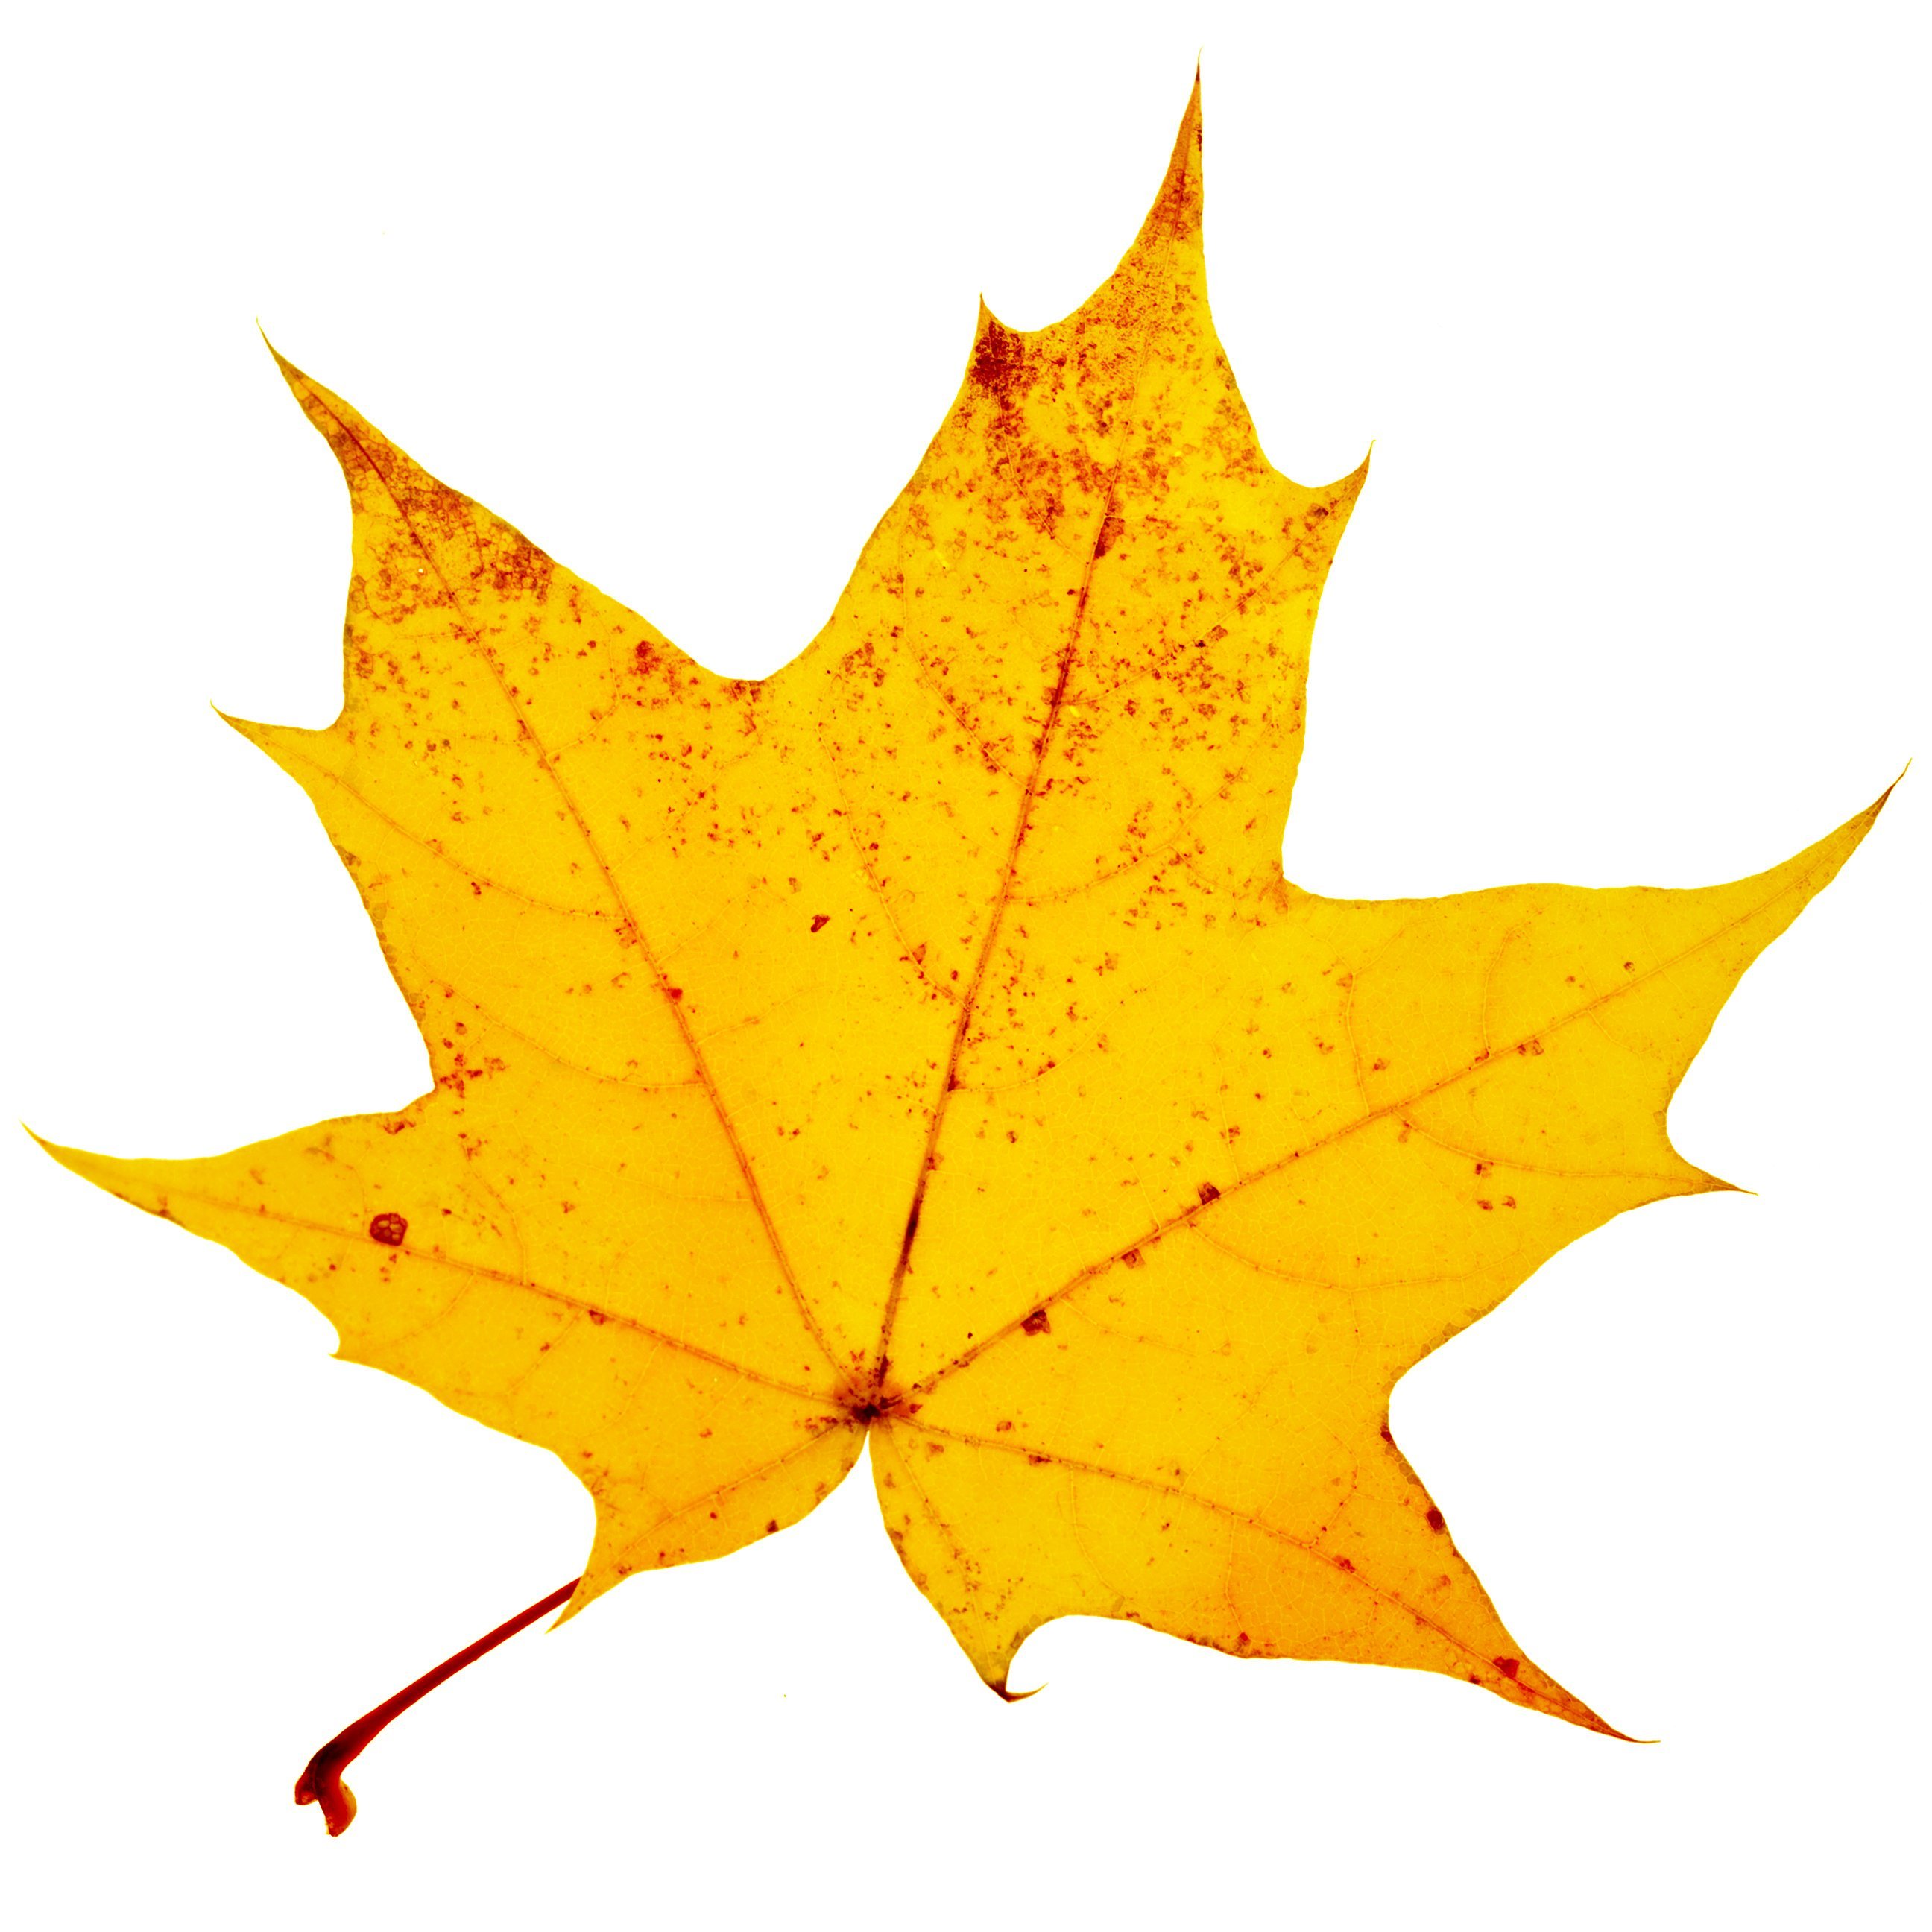 Листья клена желтые и красные. Кленовый лист желтый. Осенний кленовый лист. Желтый кленовый лист на белом фоне. Жёлтый лист осенний.